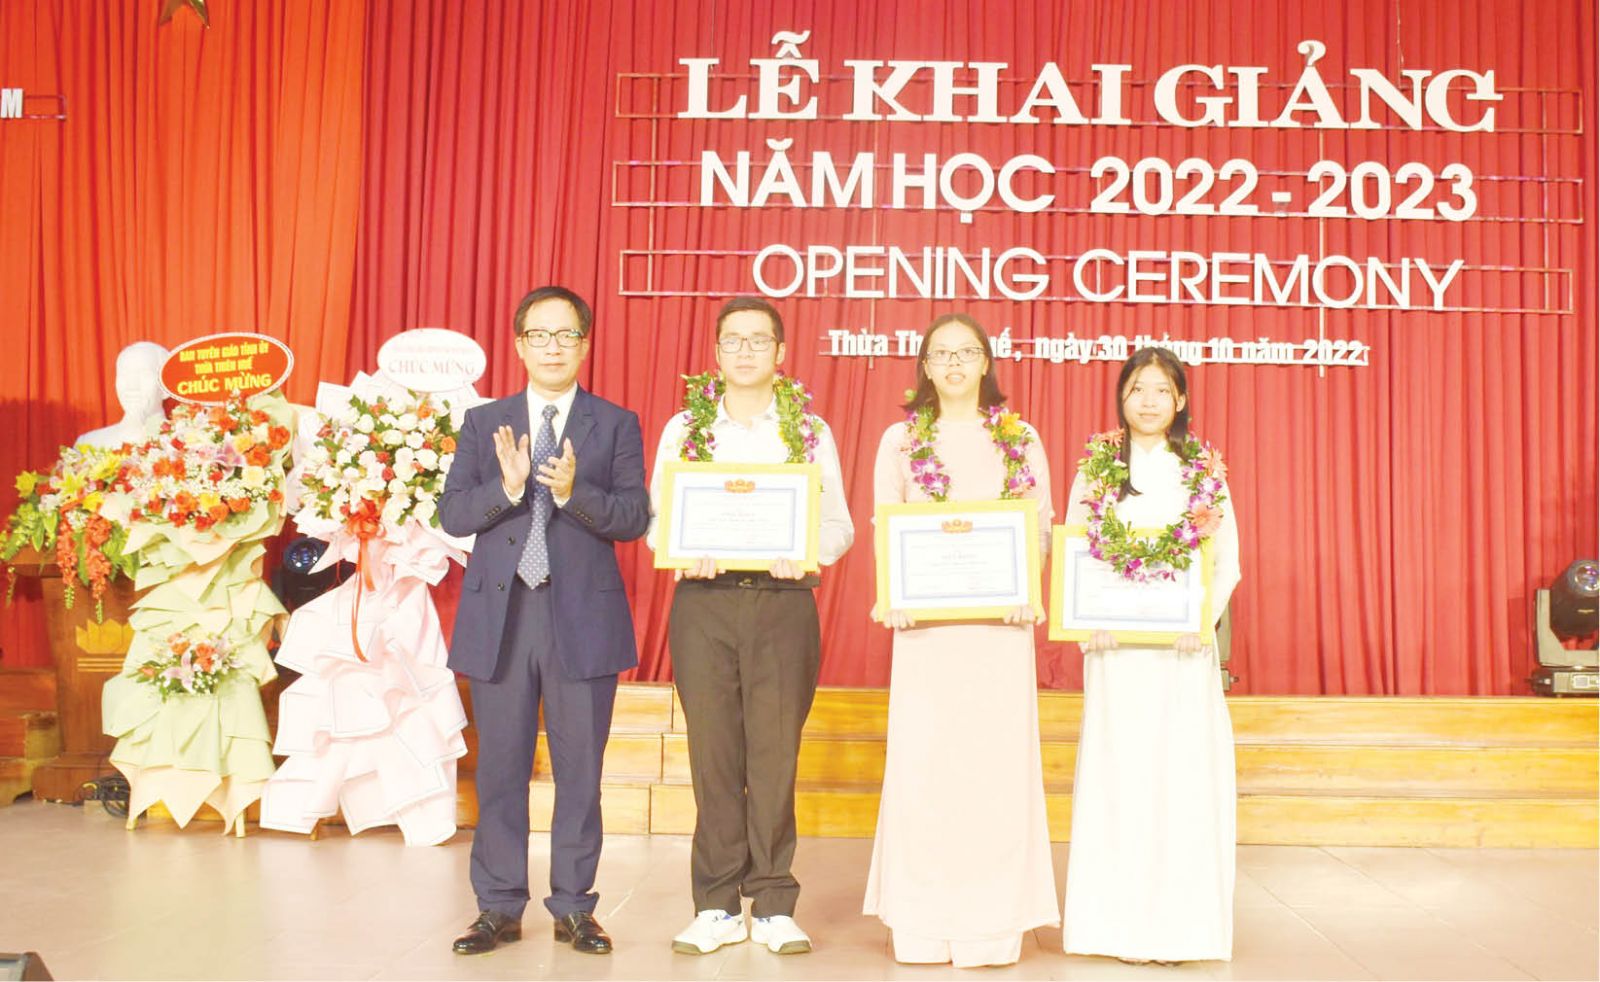 Lãnh đạo Trường ĐH Sư phạm trao tặng khen thưởng có 3 tân thủ khoa trường (từ trái sang phải: Nguyễn Anh Tuấn, Nguyễn Bình An, Bùi Thị Hoài Nhi)